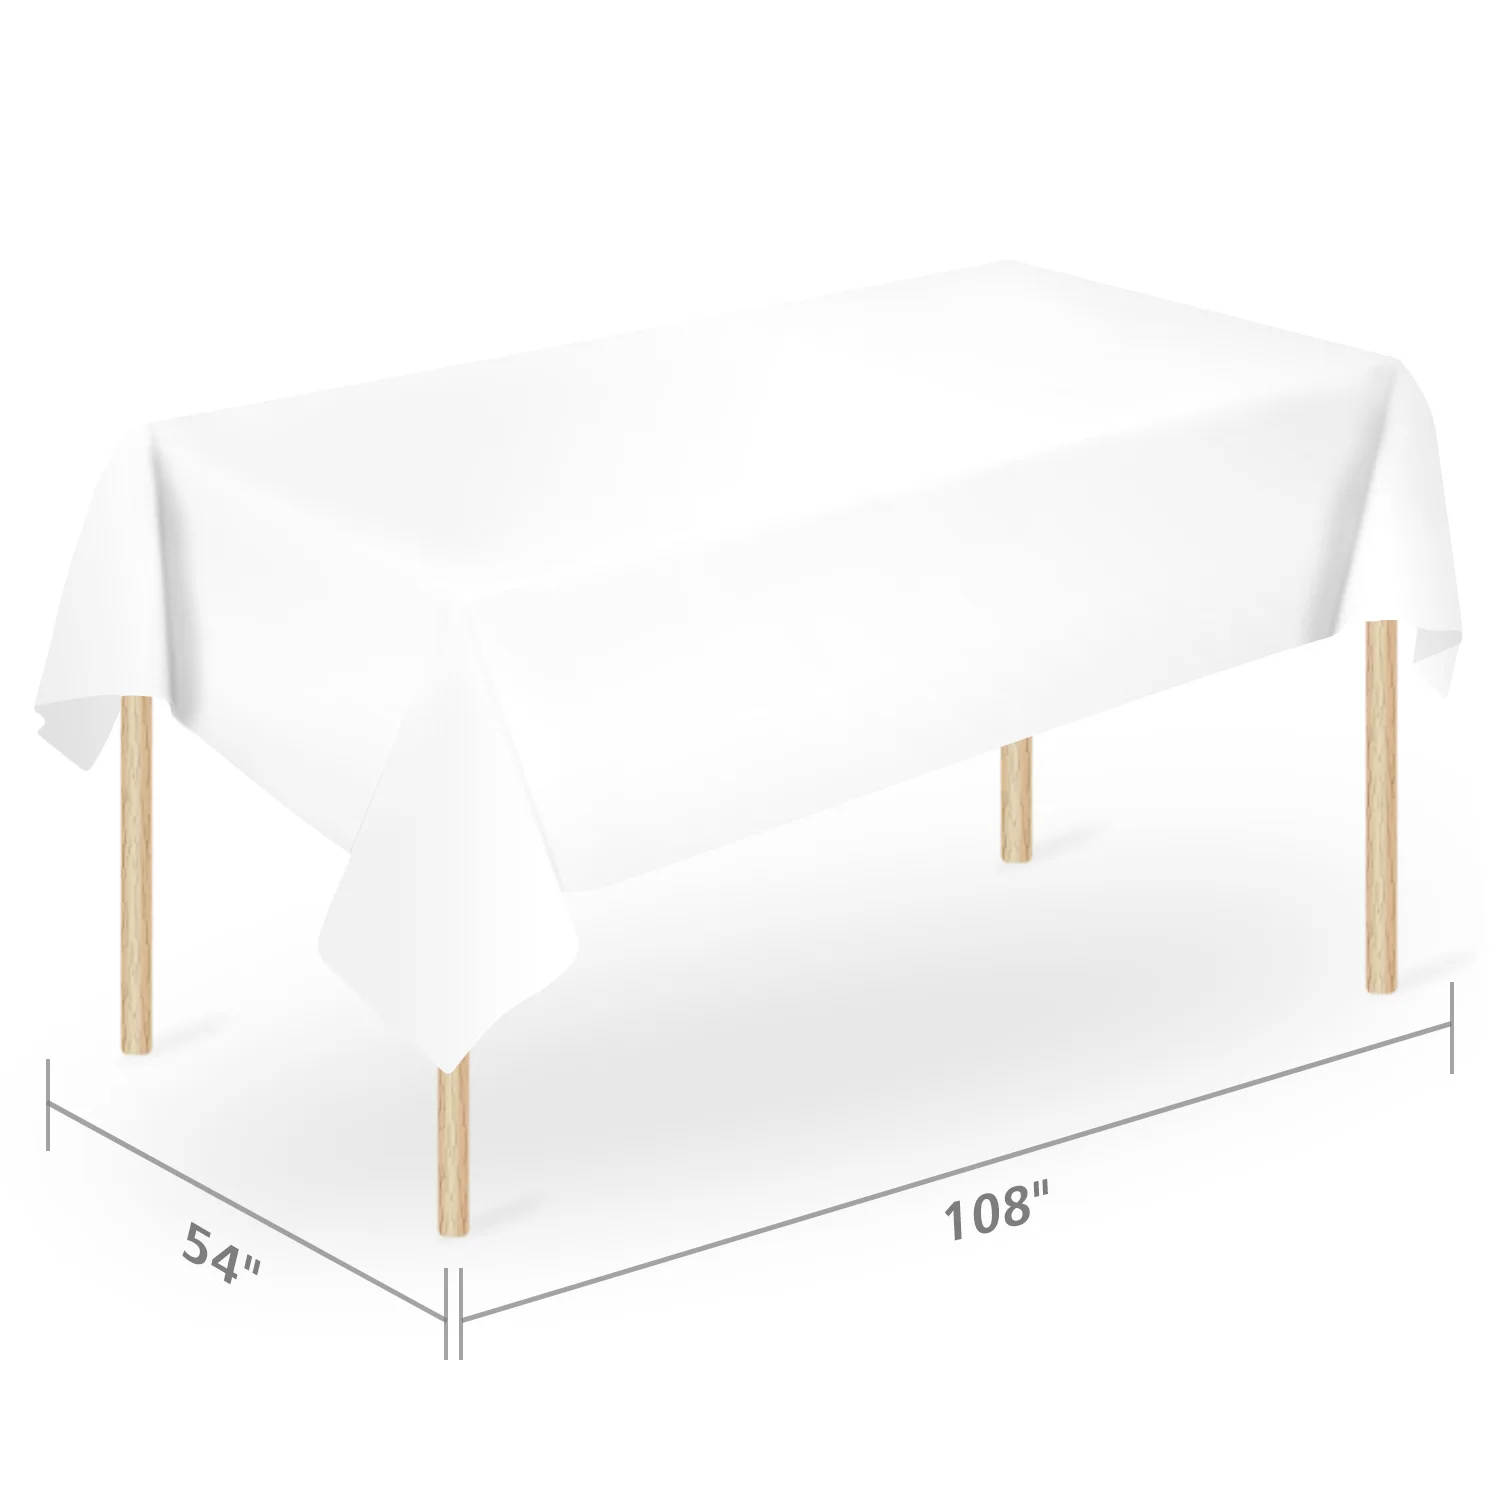 
 Скатерти пластиковые для стола, 54x108 дюйма, 6 шт. в упаковке, белая прямоугольная одноразовая скатерть  